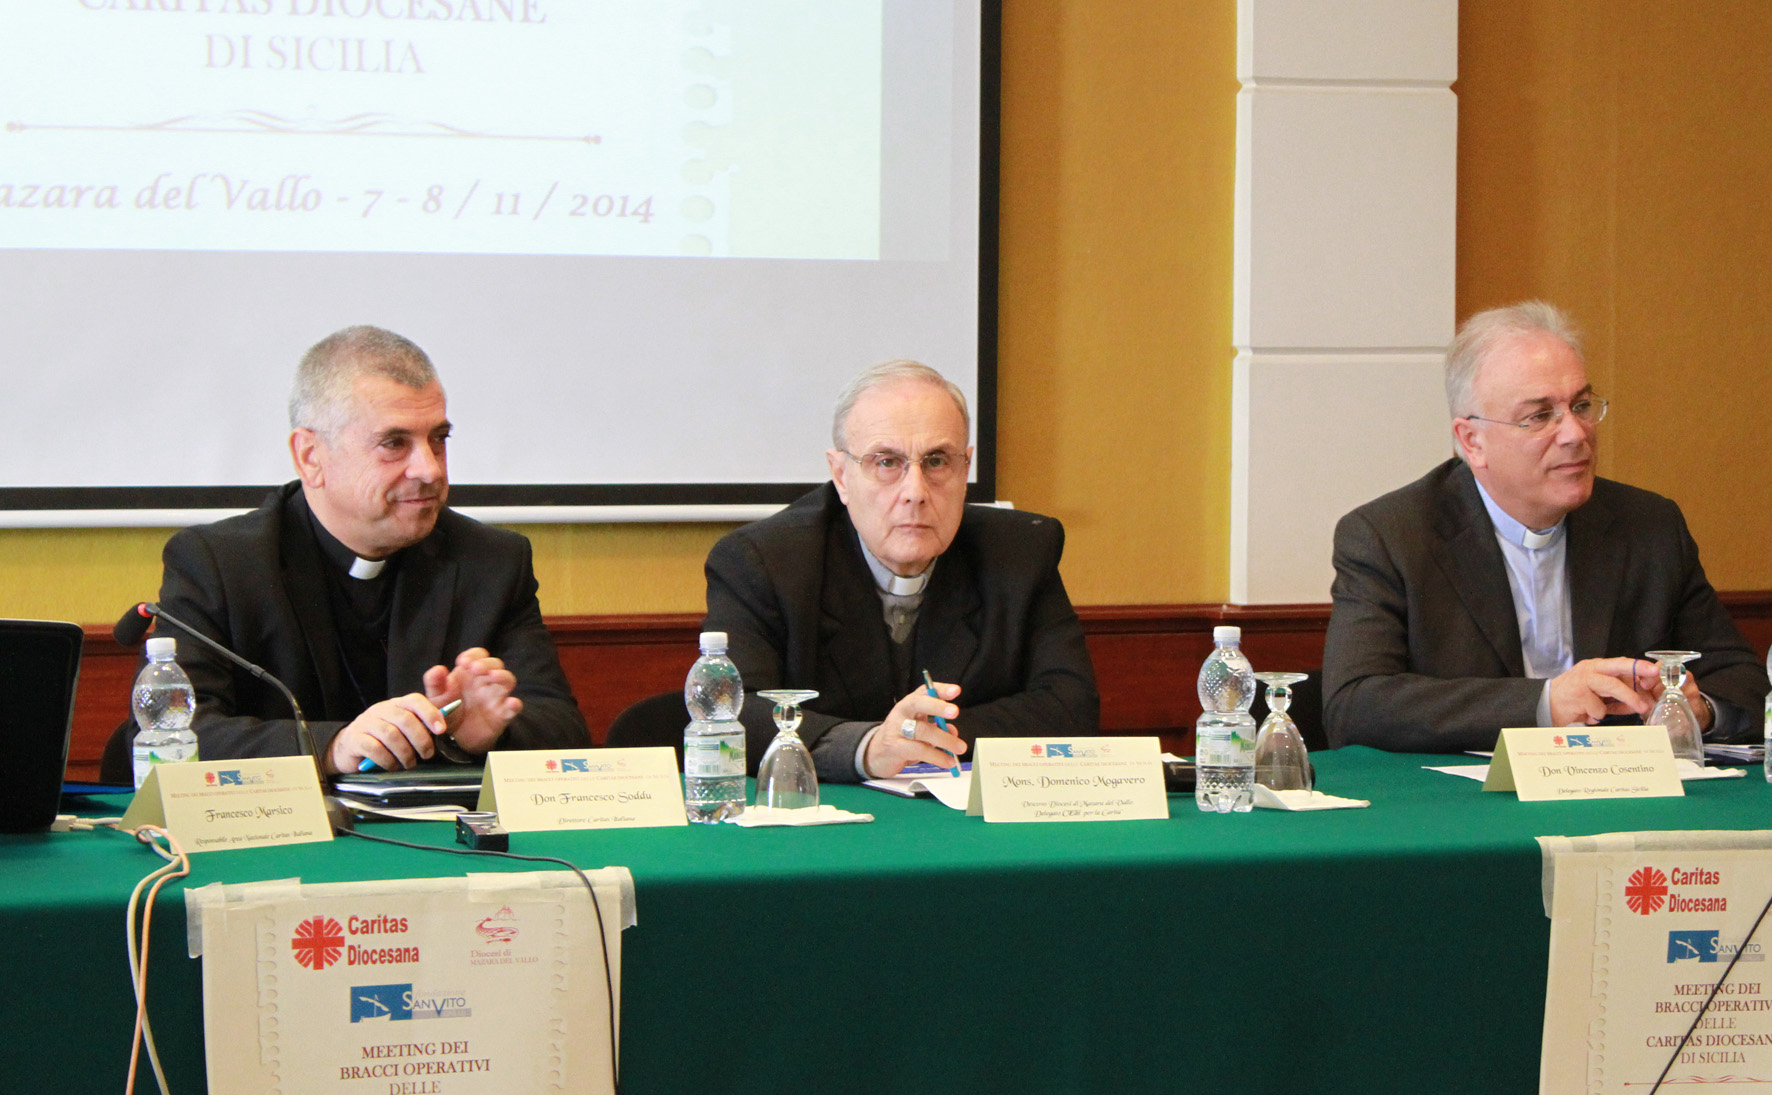 La Caritas siciliana: "E' allarme povertà". Mogavero: "Istituzioni lontane dalla realtà"